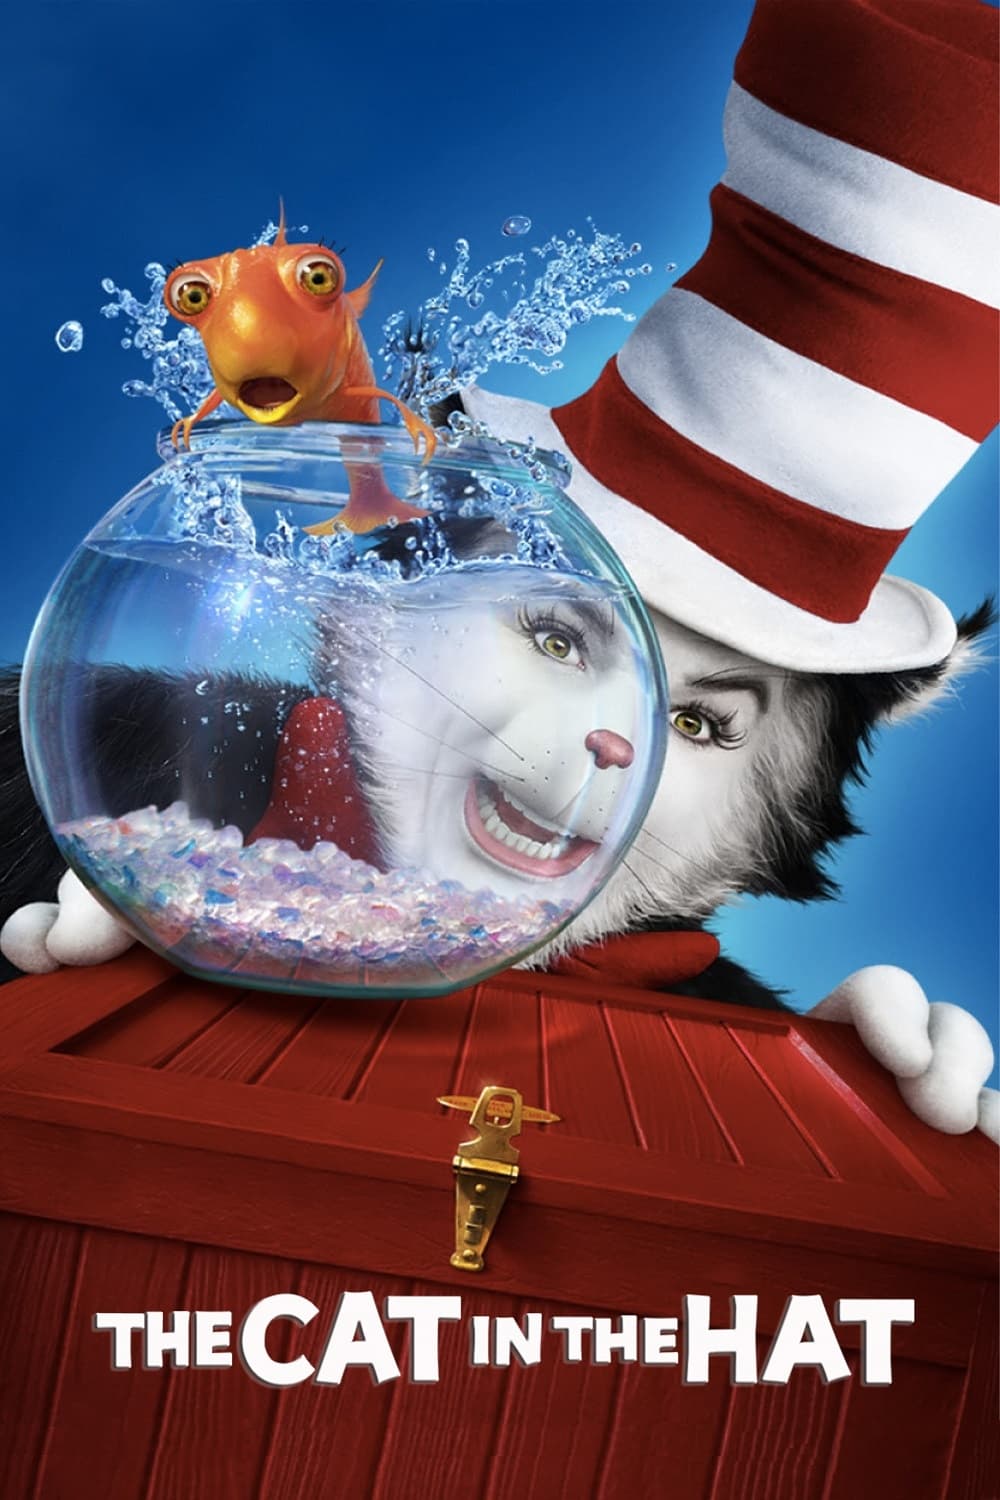 Le chat chapeauté (2003)